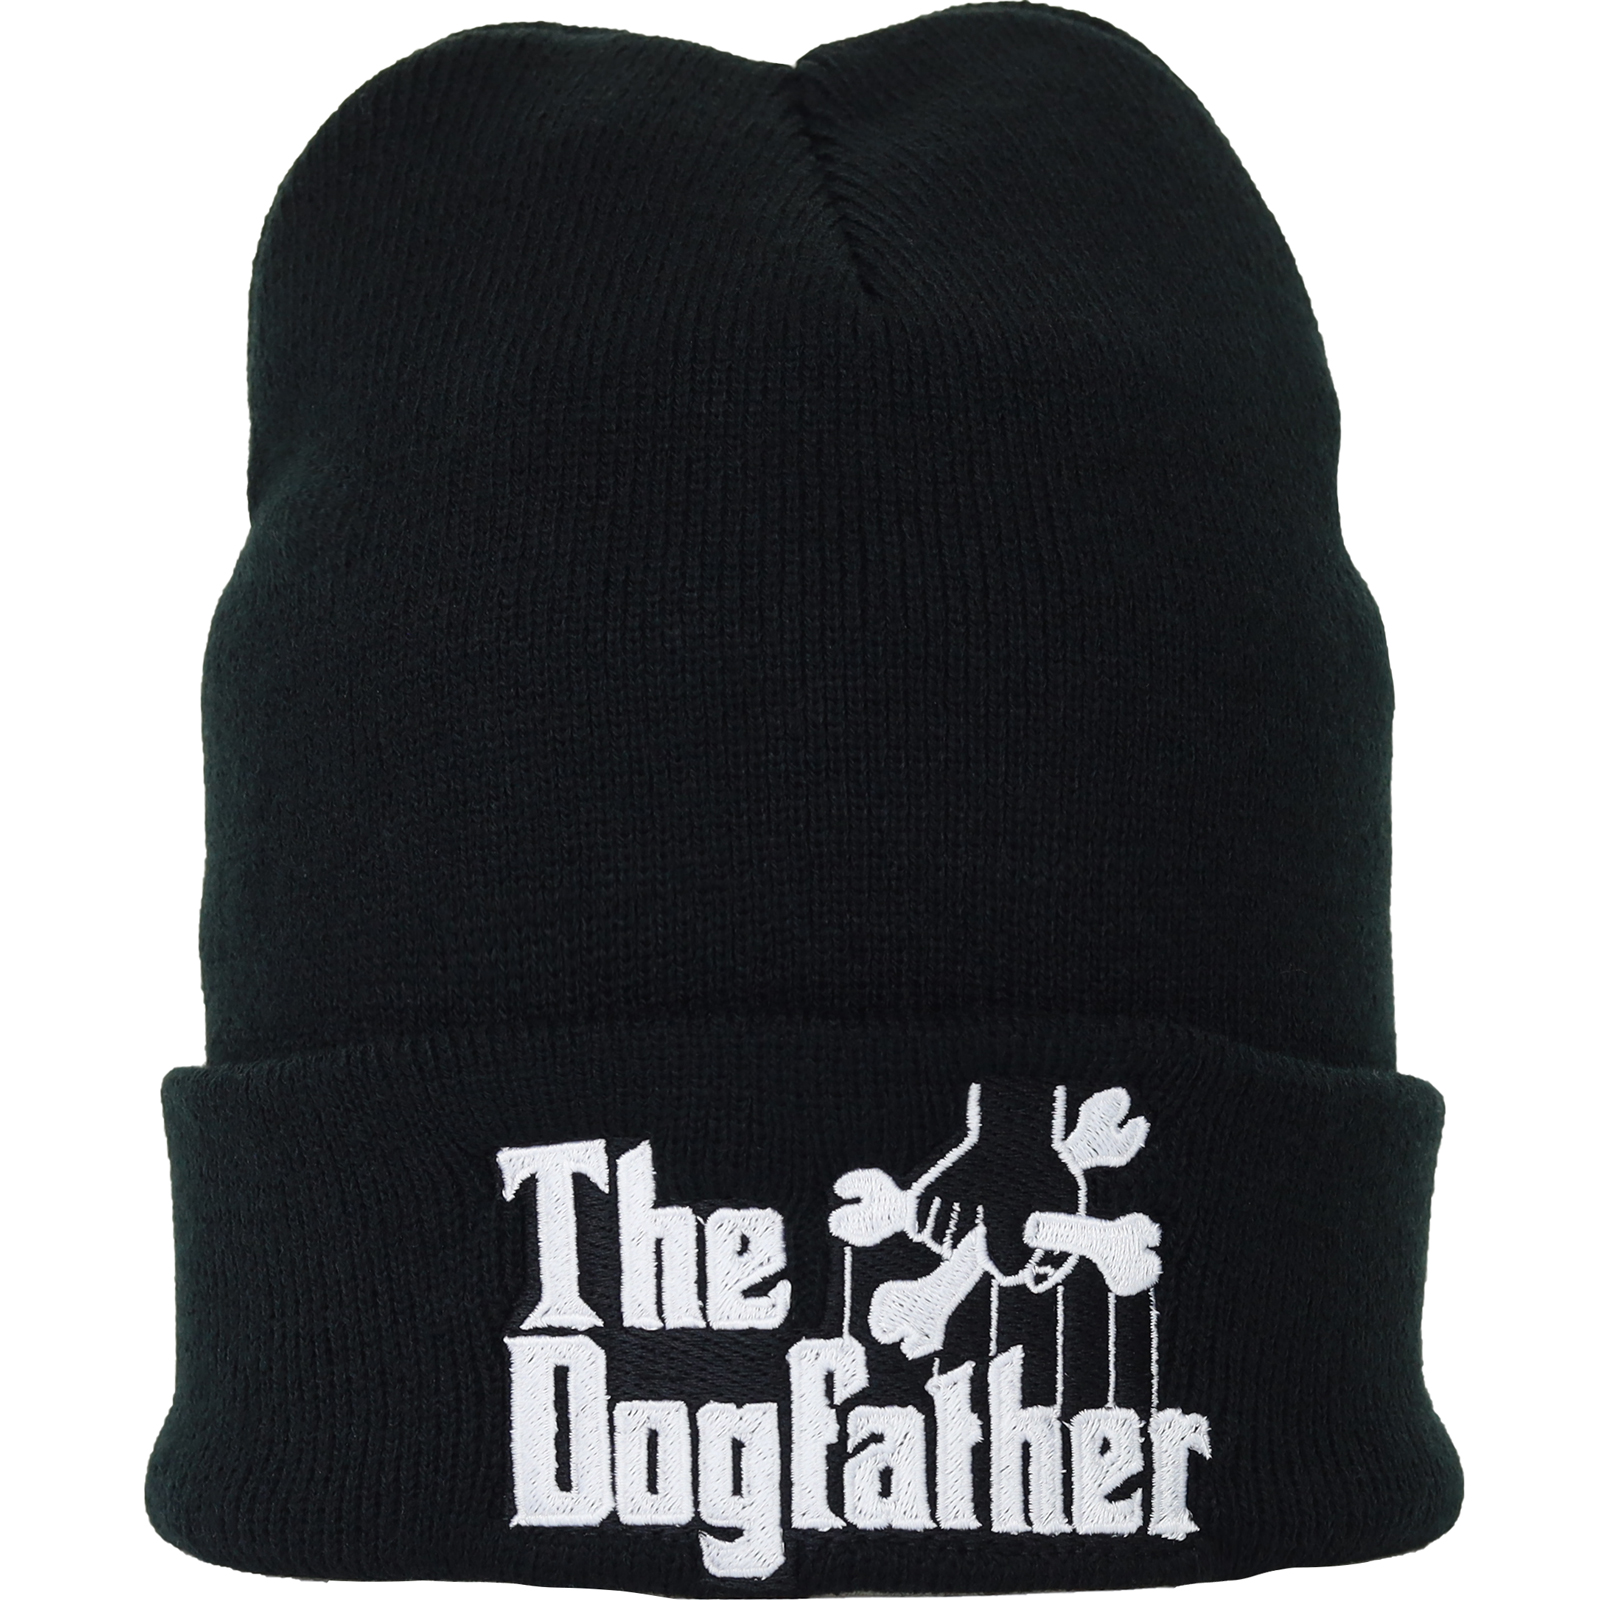 The dogfather - Strickmütze